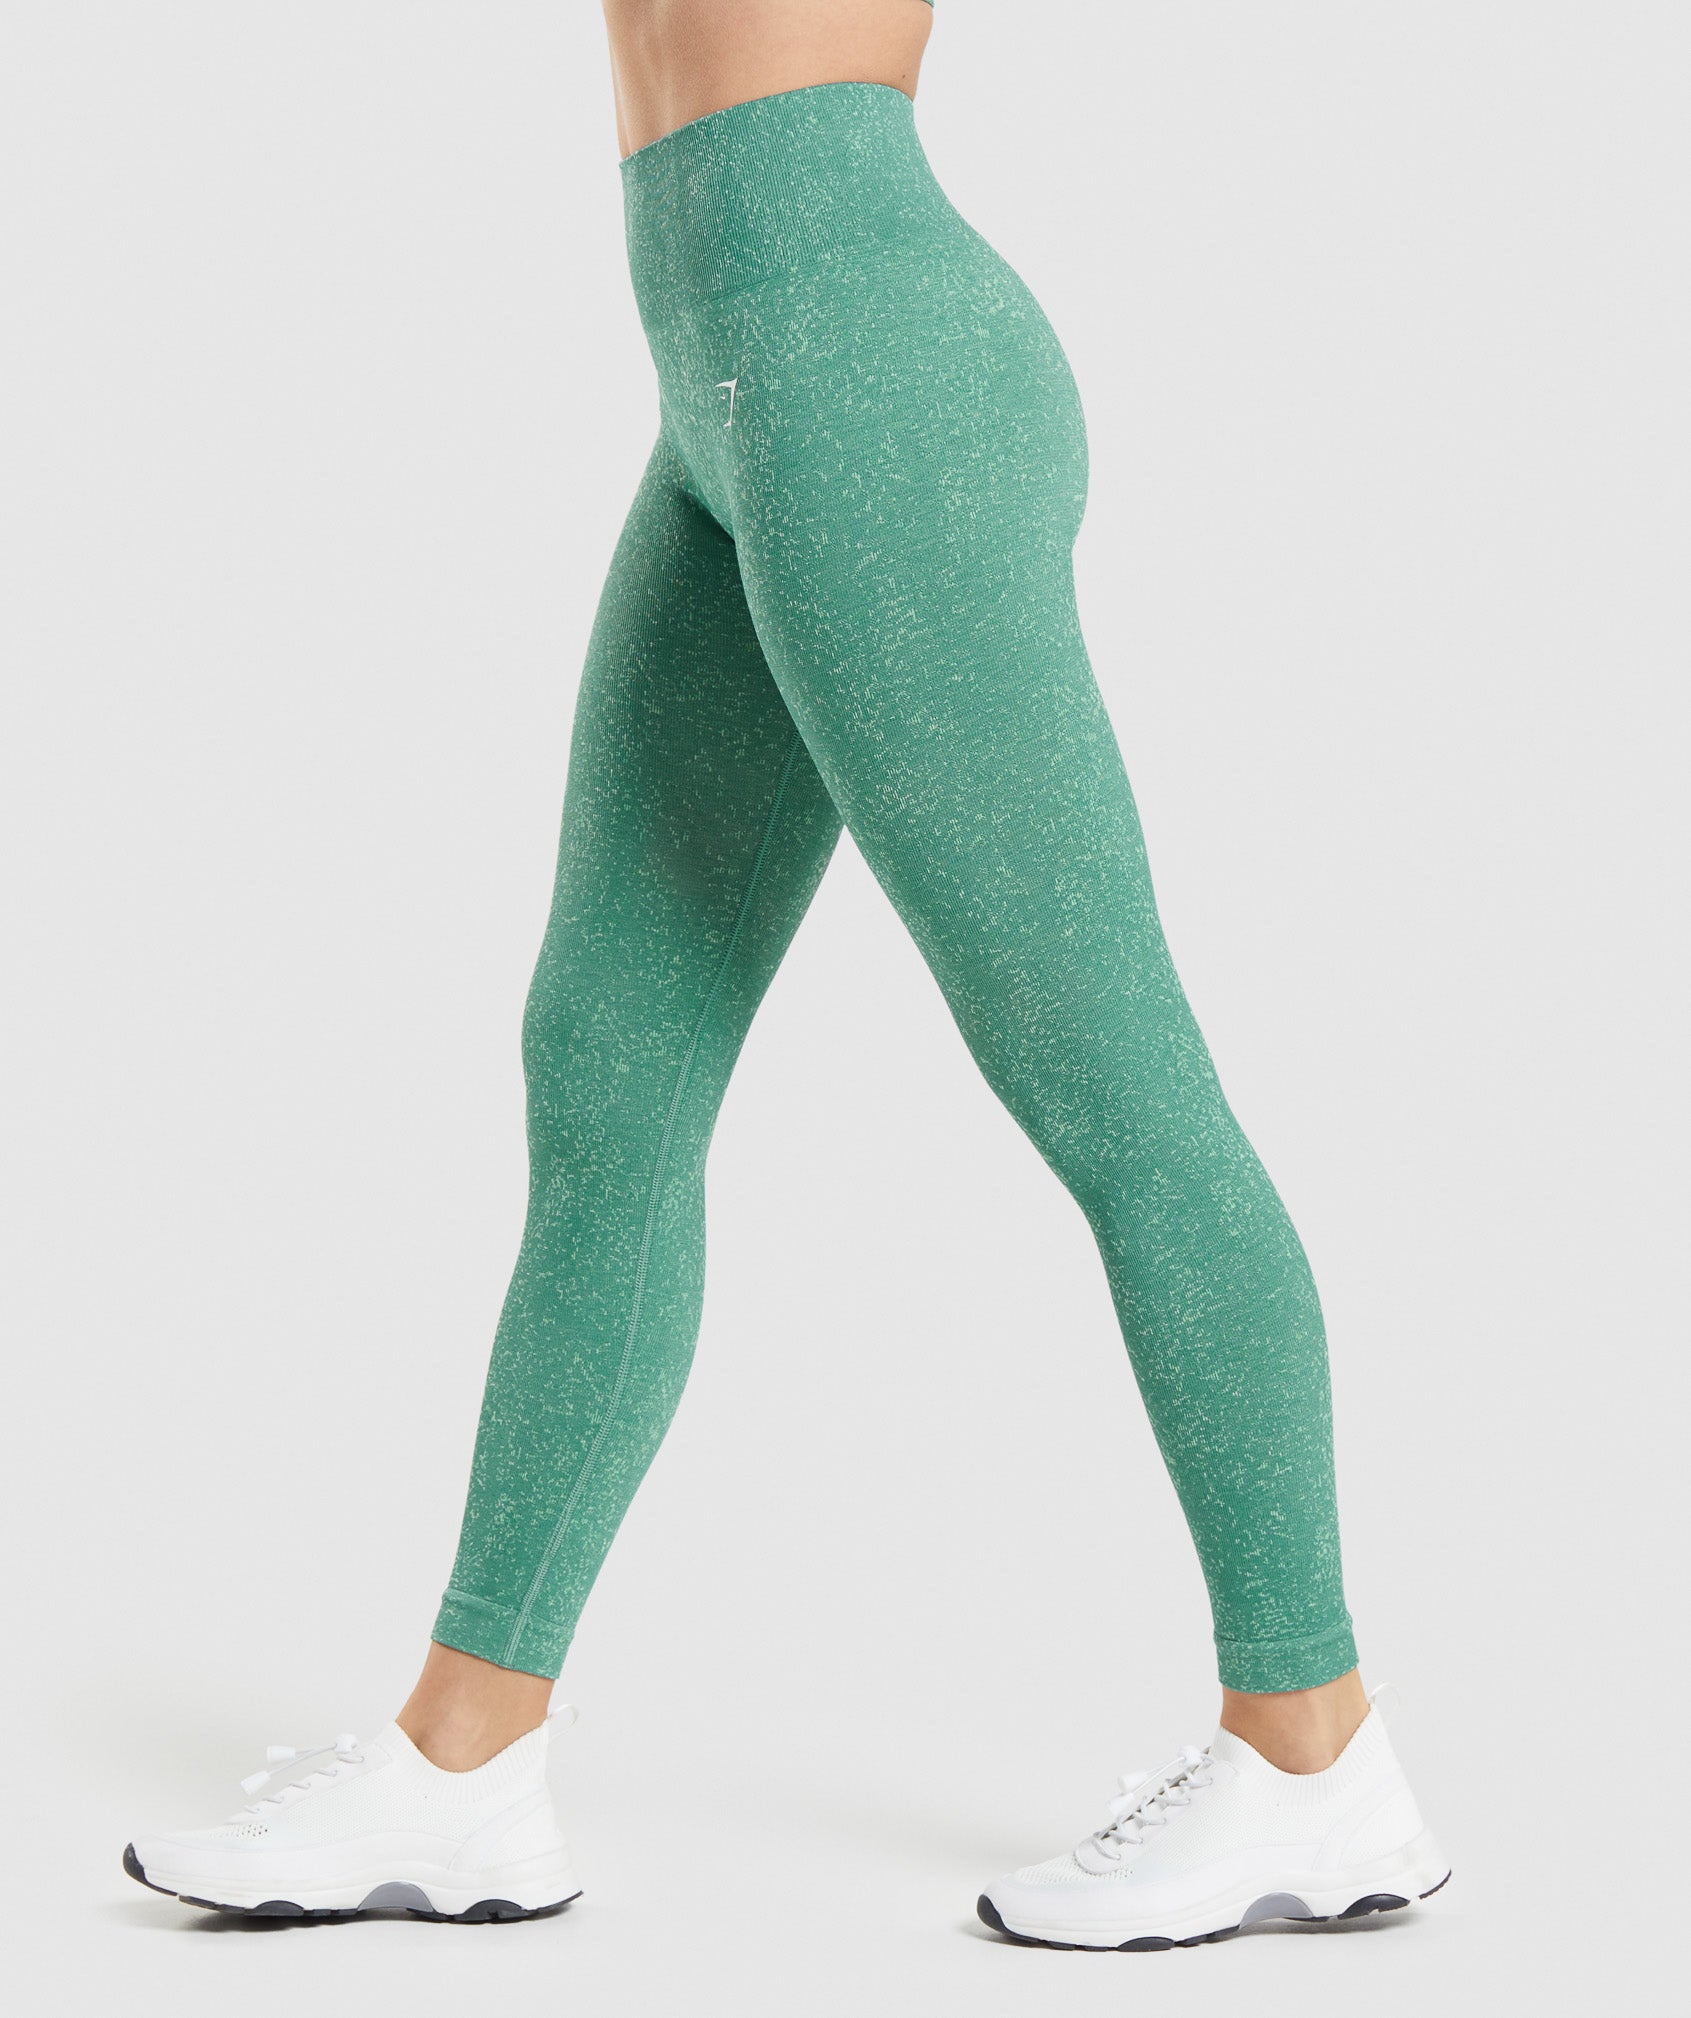 Mineral Green Leggings - Women's - High Waist